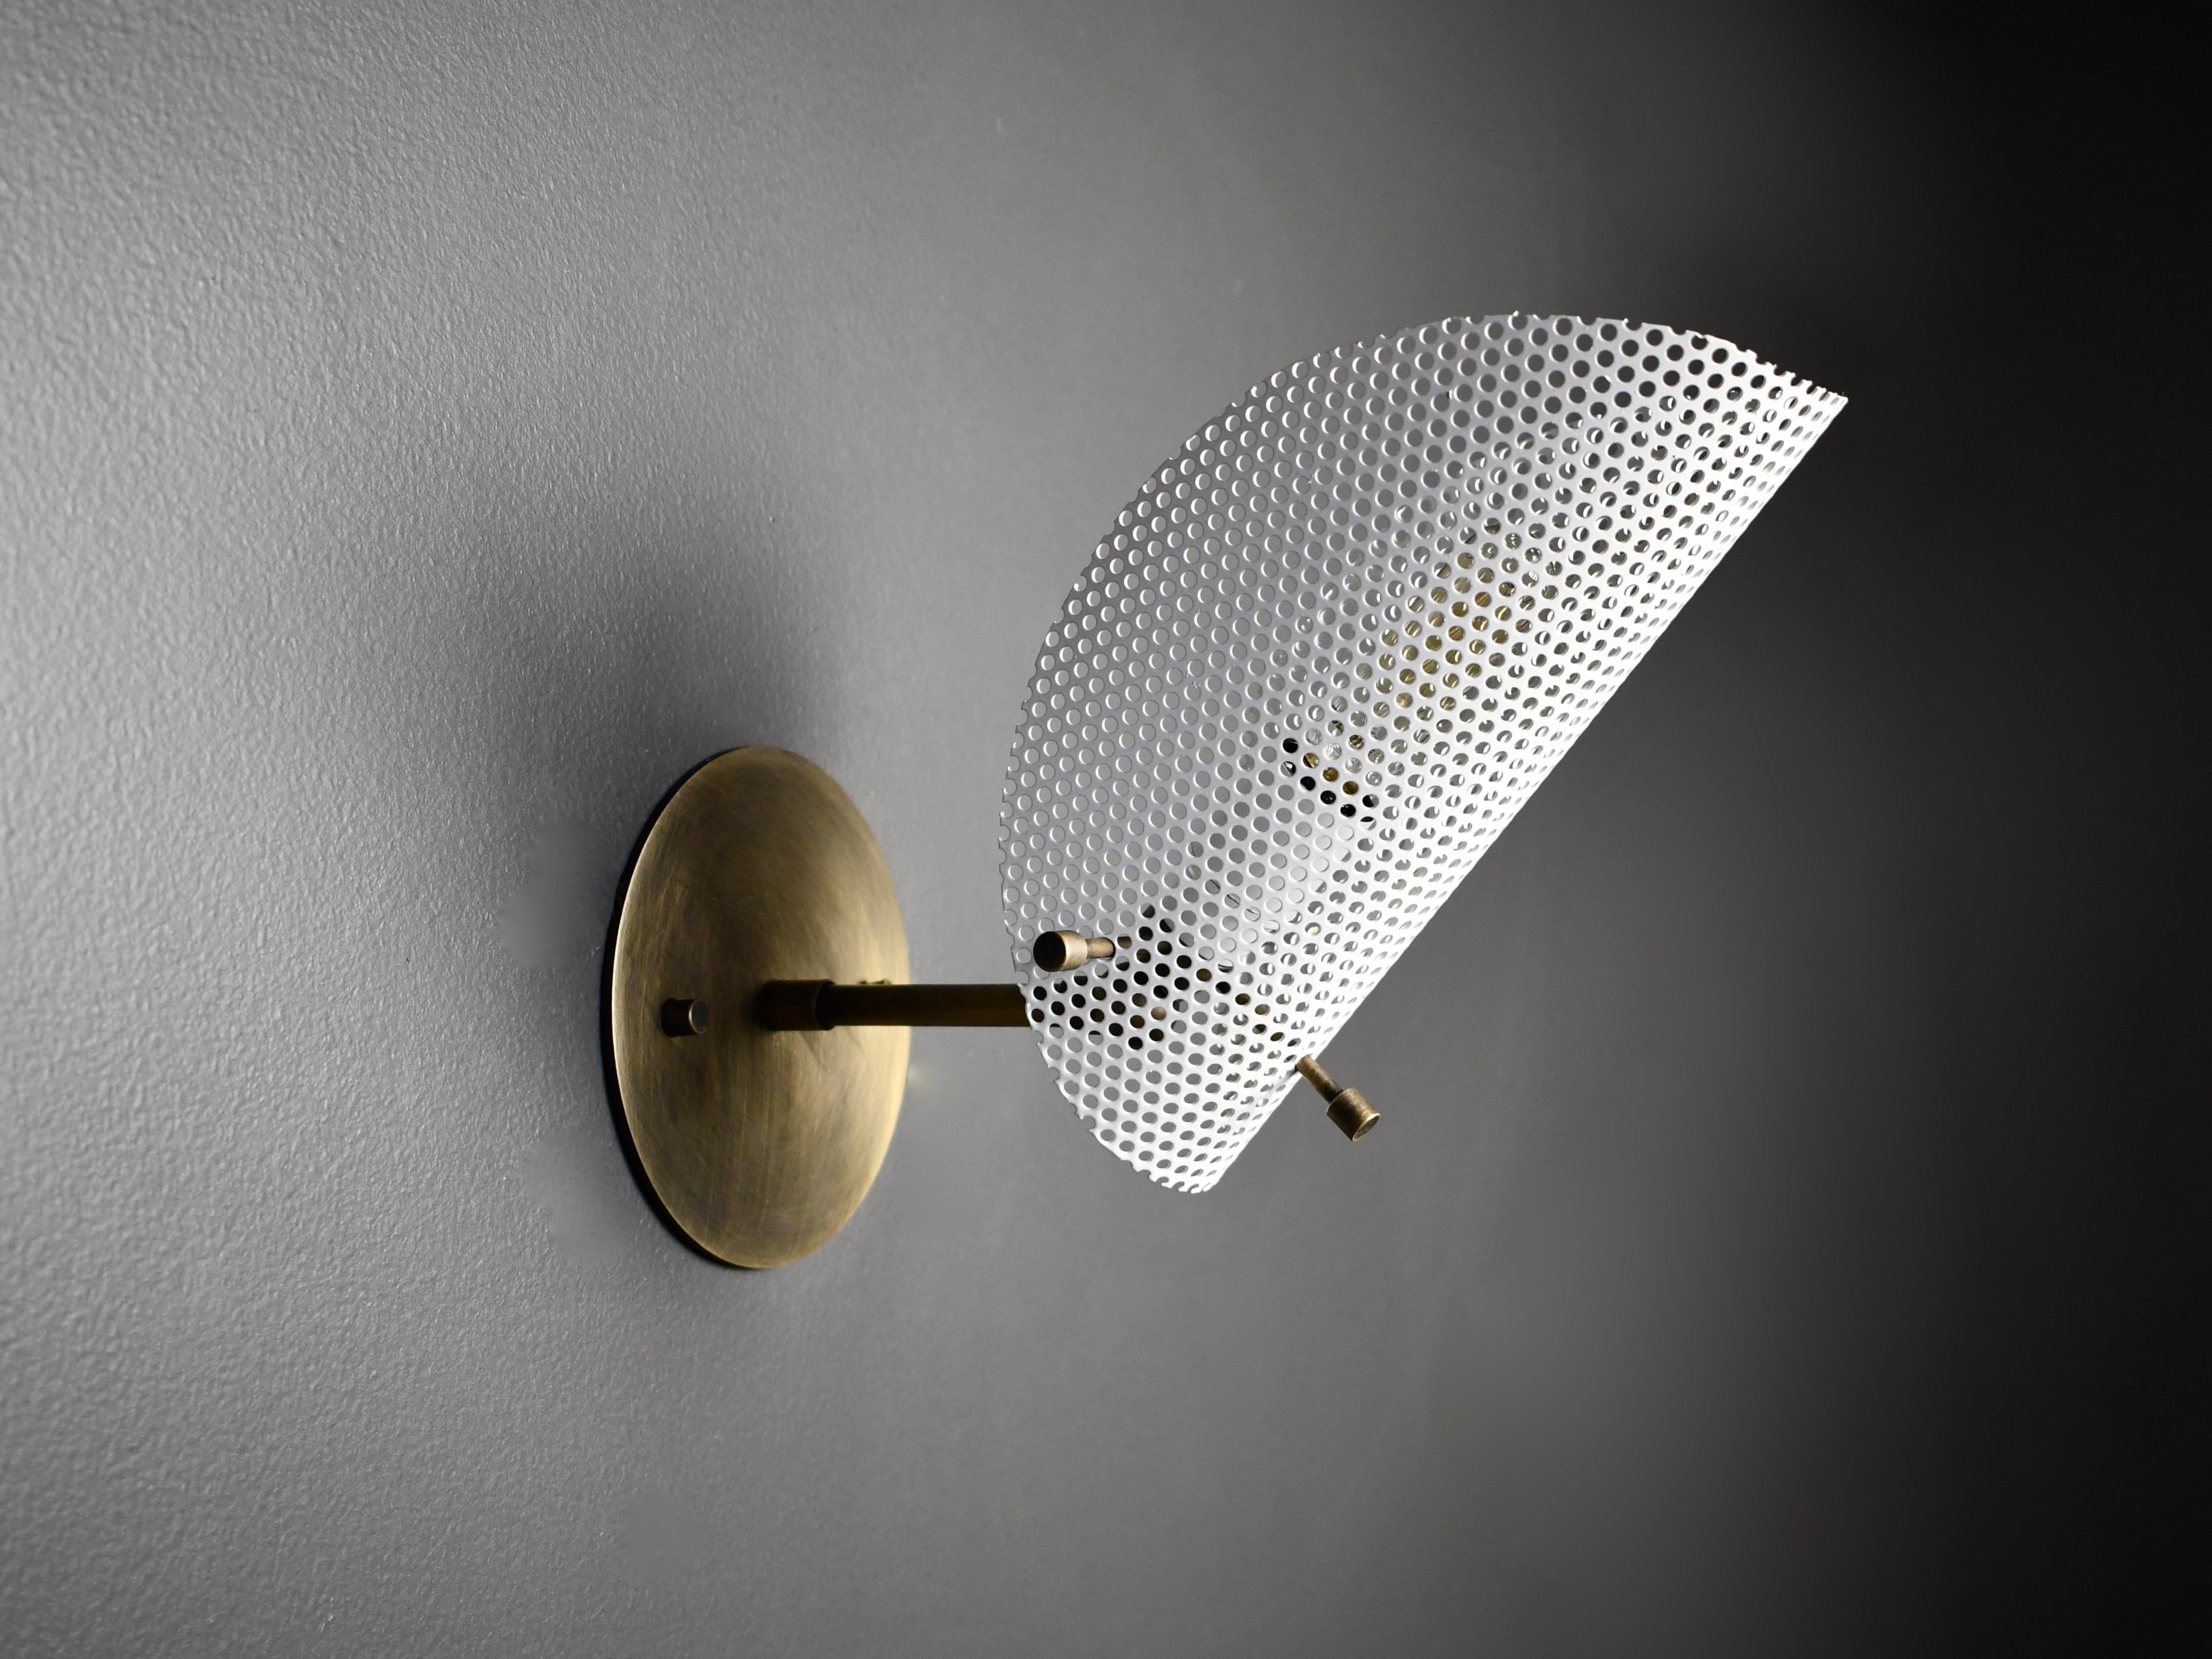 Mid-Century Modern Petite Tulle Wall Sconce in Bronze + White Enamel Mesh, Blueprint Lighting, 2020 For Sale